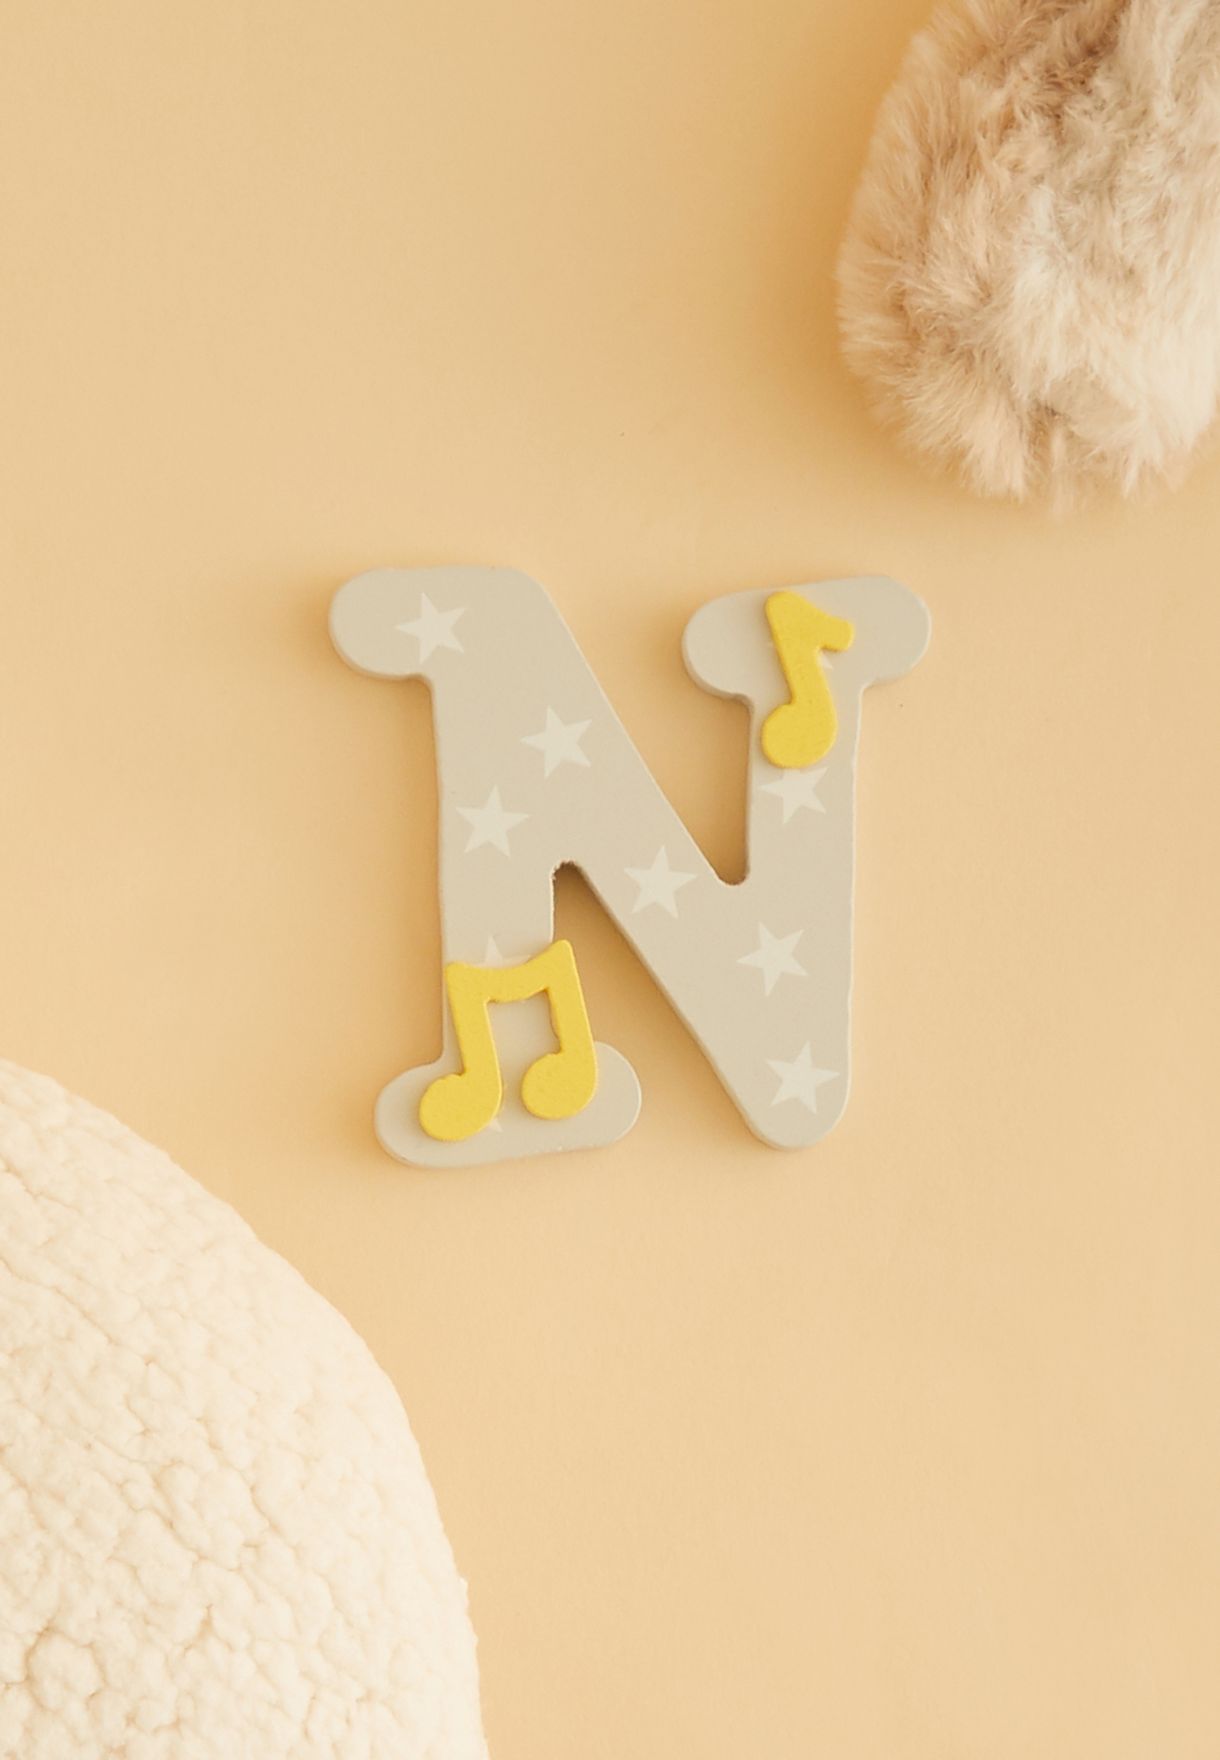 حرف "N" خشبي